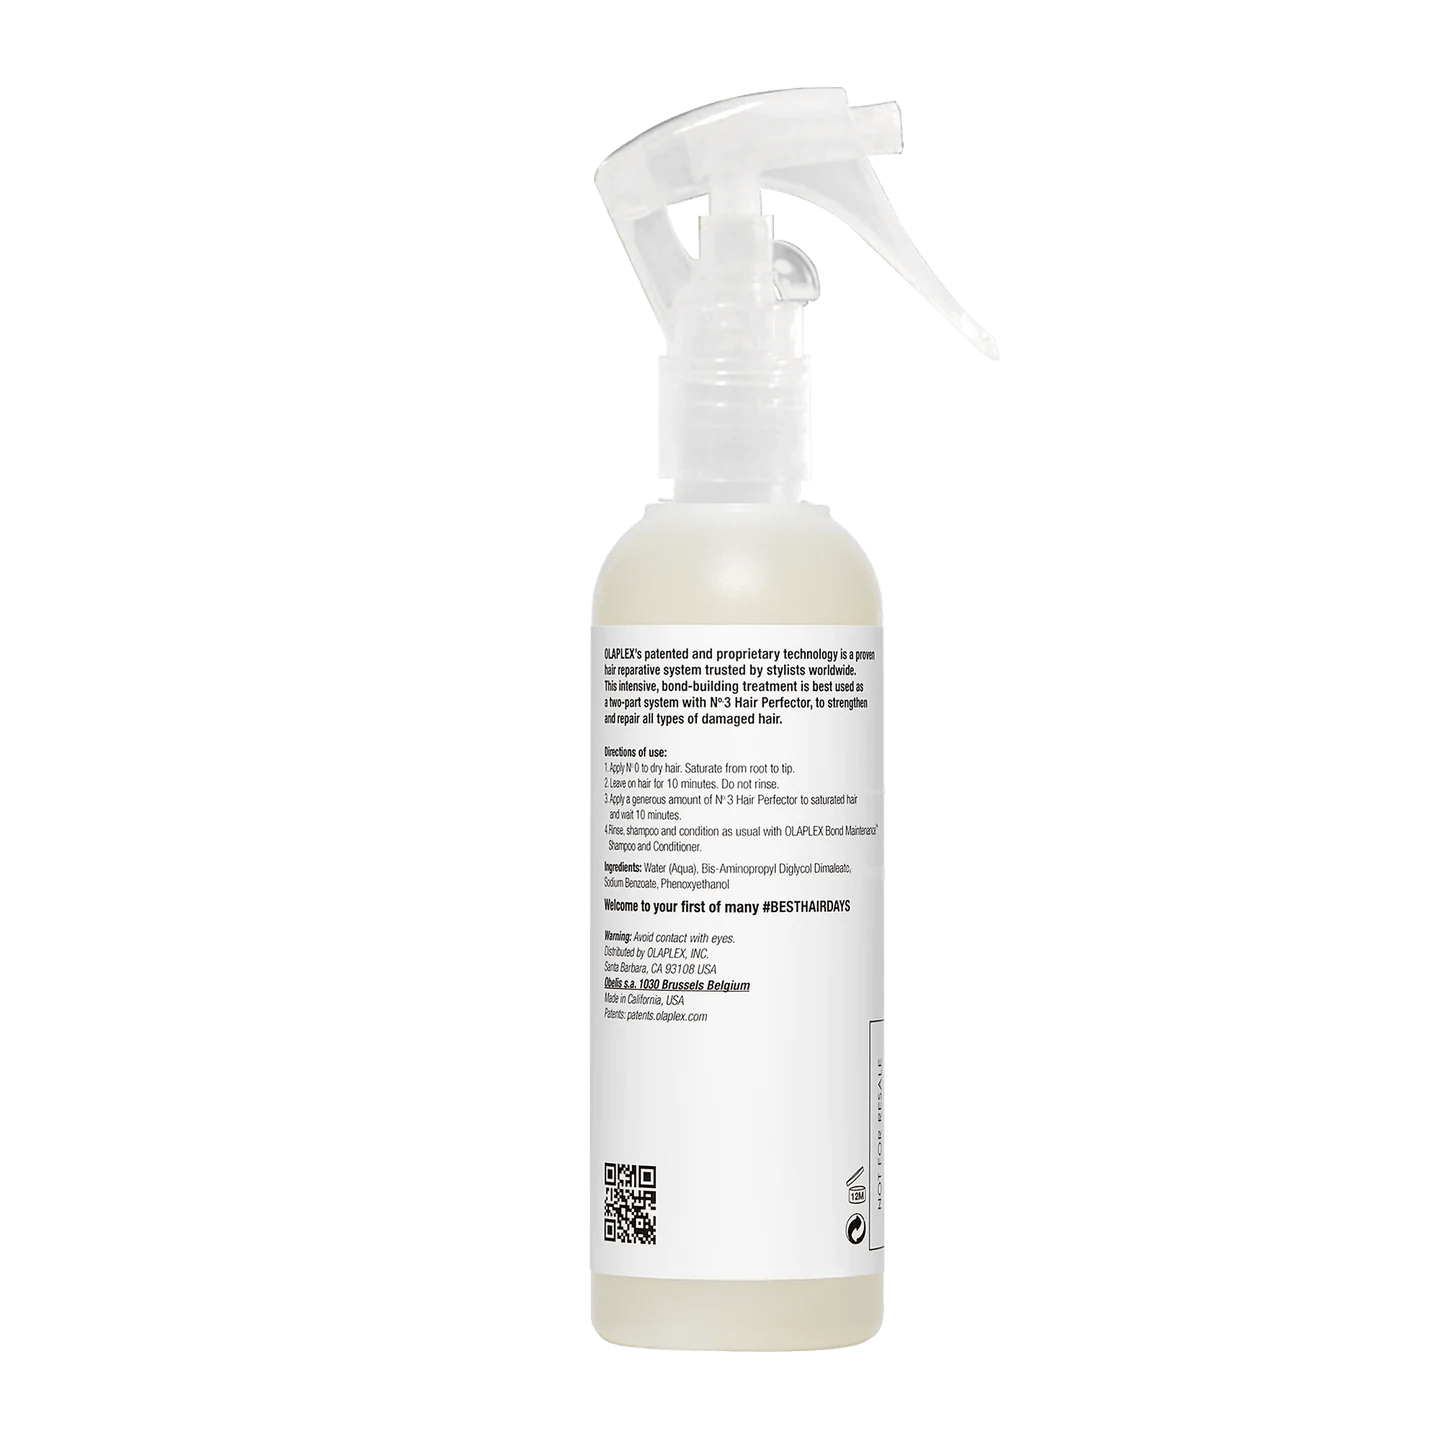 Olaplex treatment spray bottle